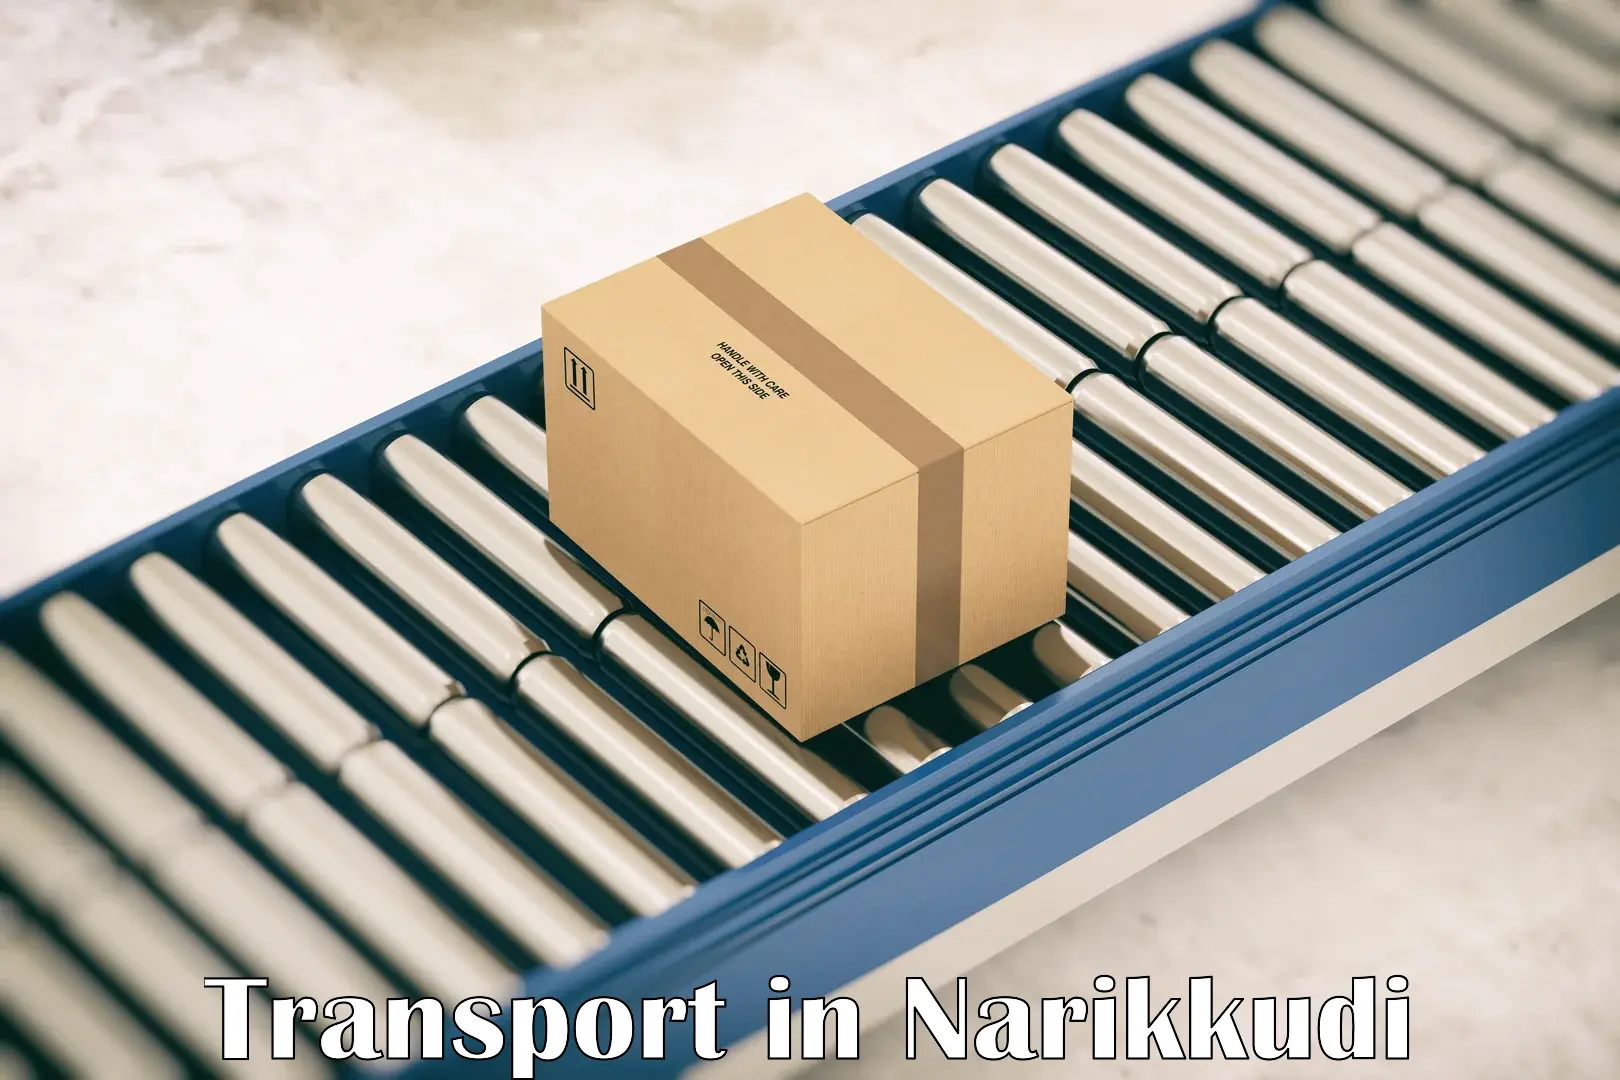 Daily transport service in Narikkudi